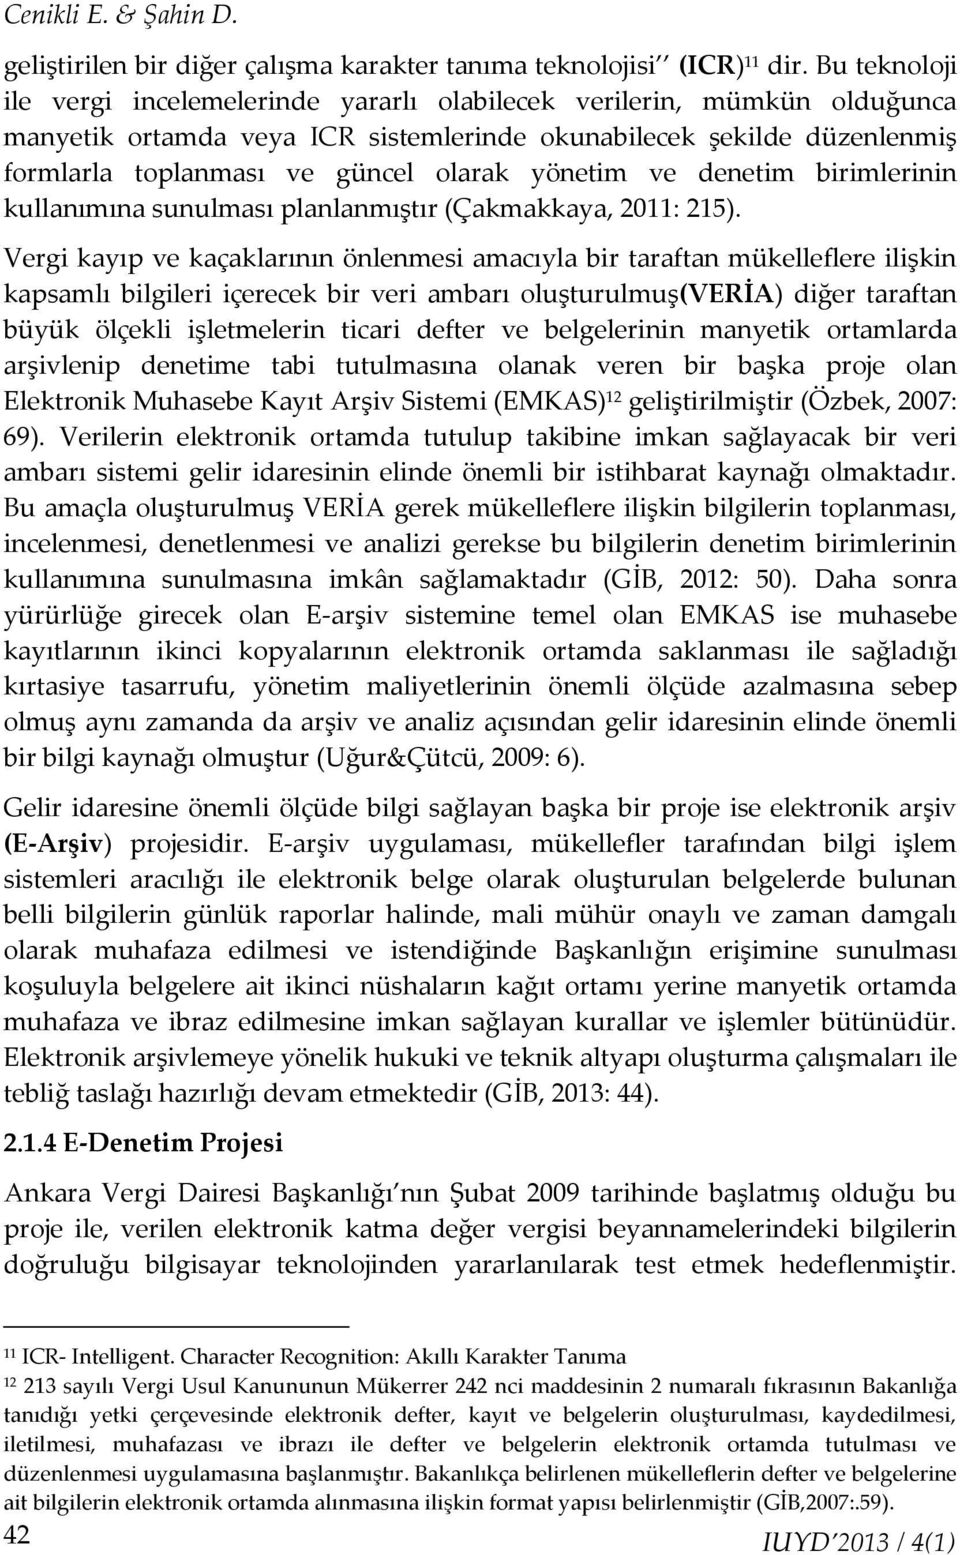 yönetim ve denetim birimlerinin kullanımına sunulması planlanmıştır (Çakmakkaya, 2011: 215).